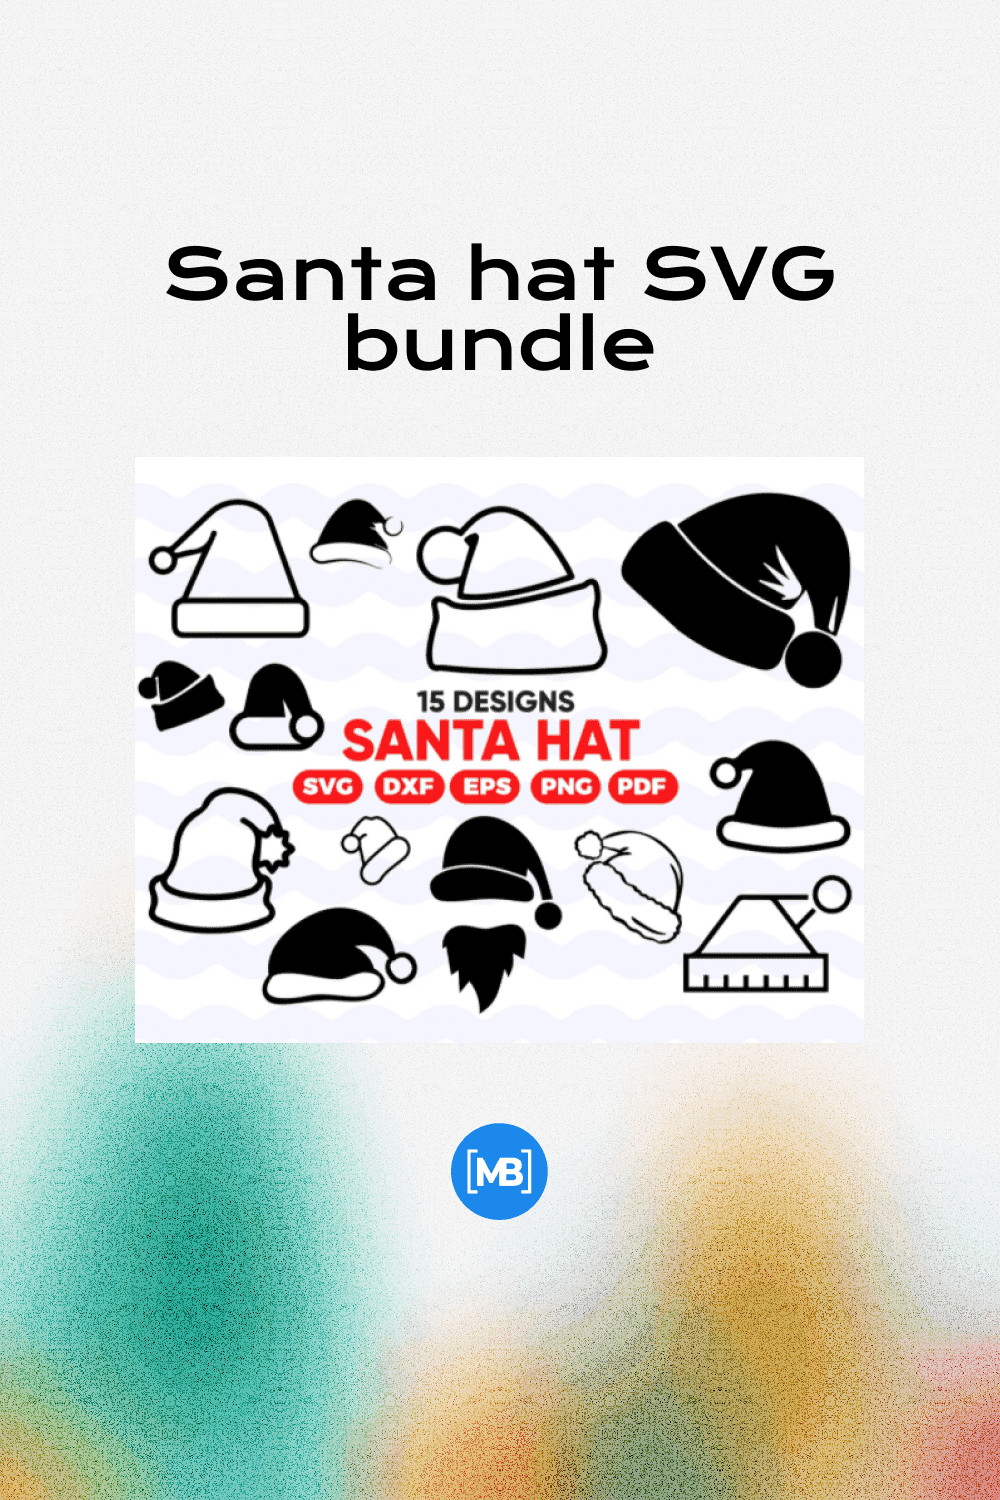 Santa hat SVG bundle.